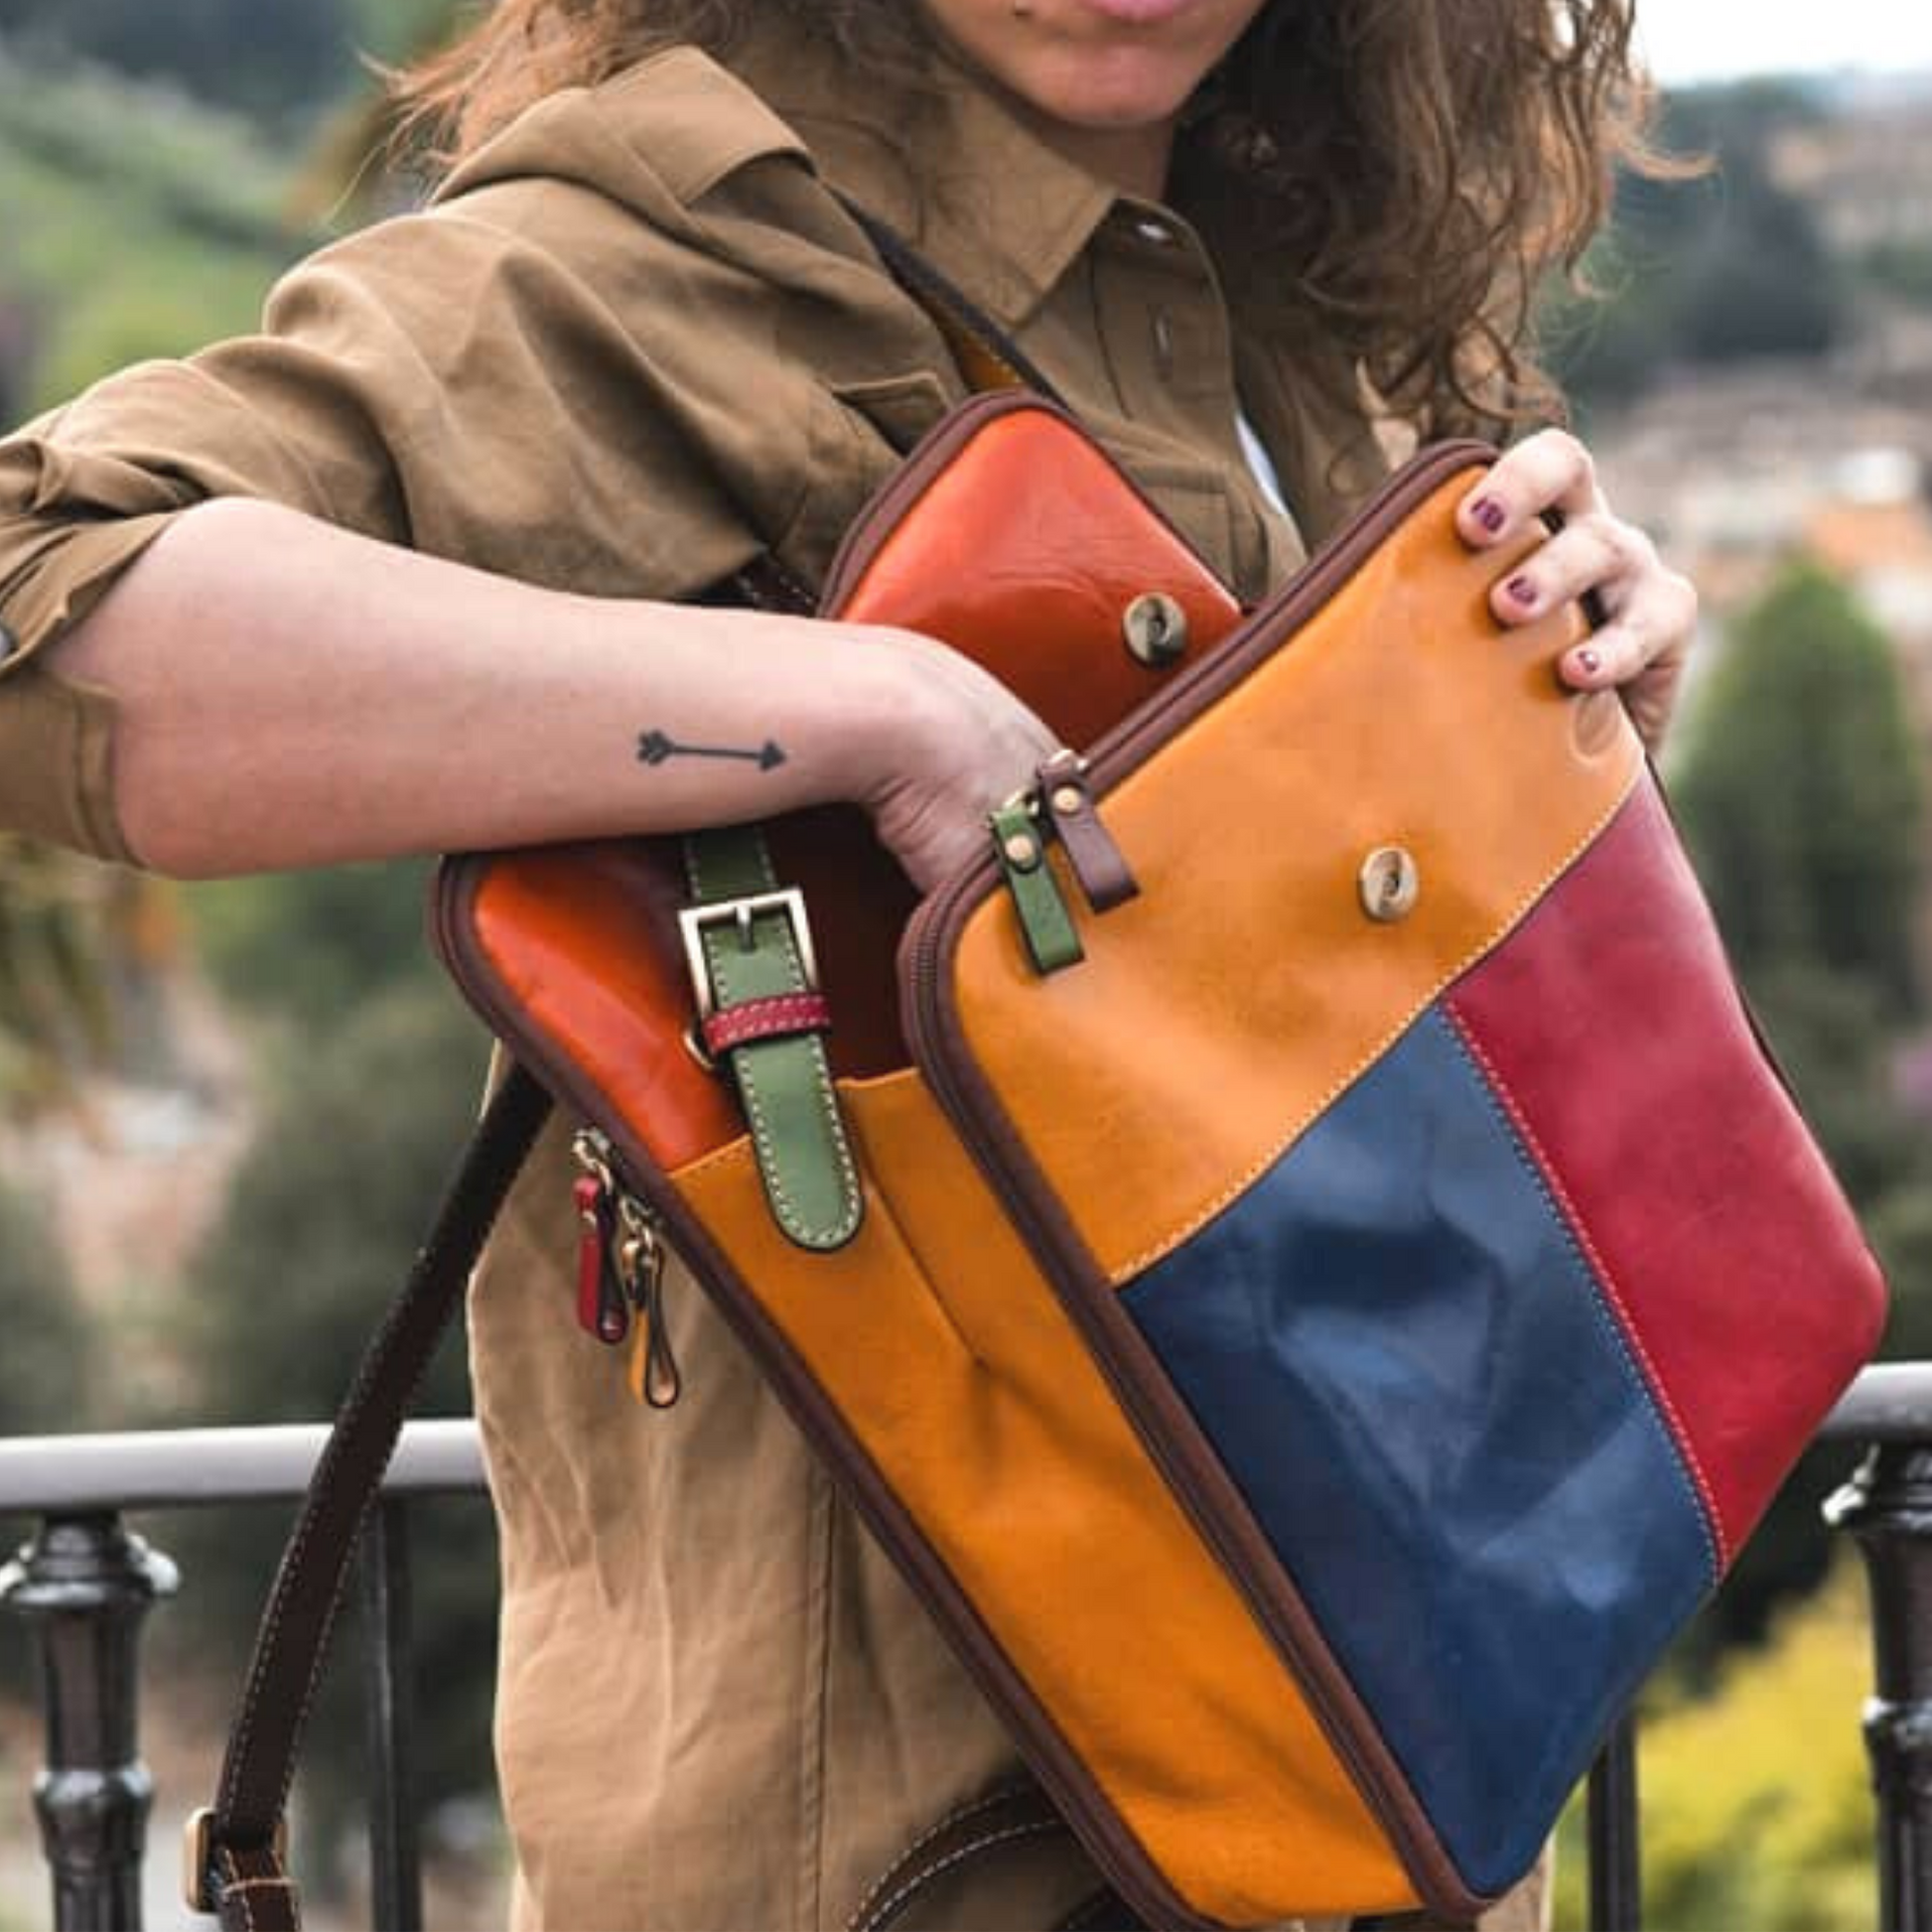 Women's Italian Leather Laptop Backpack